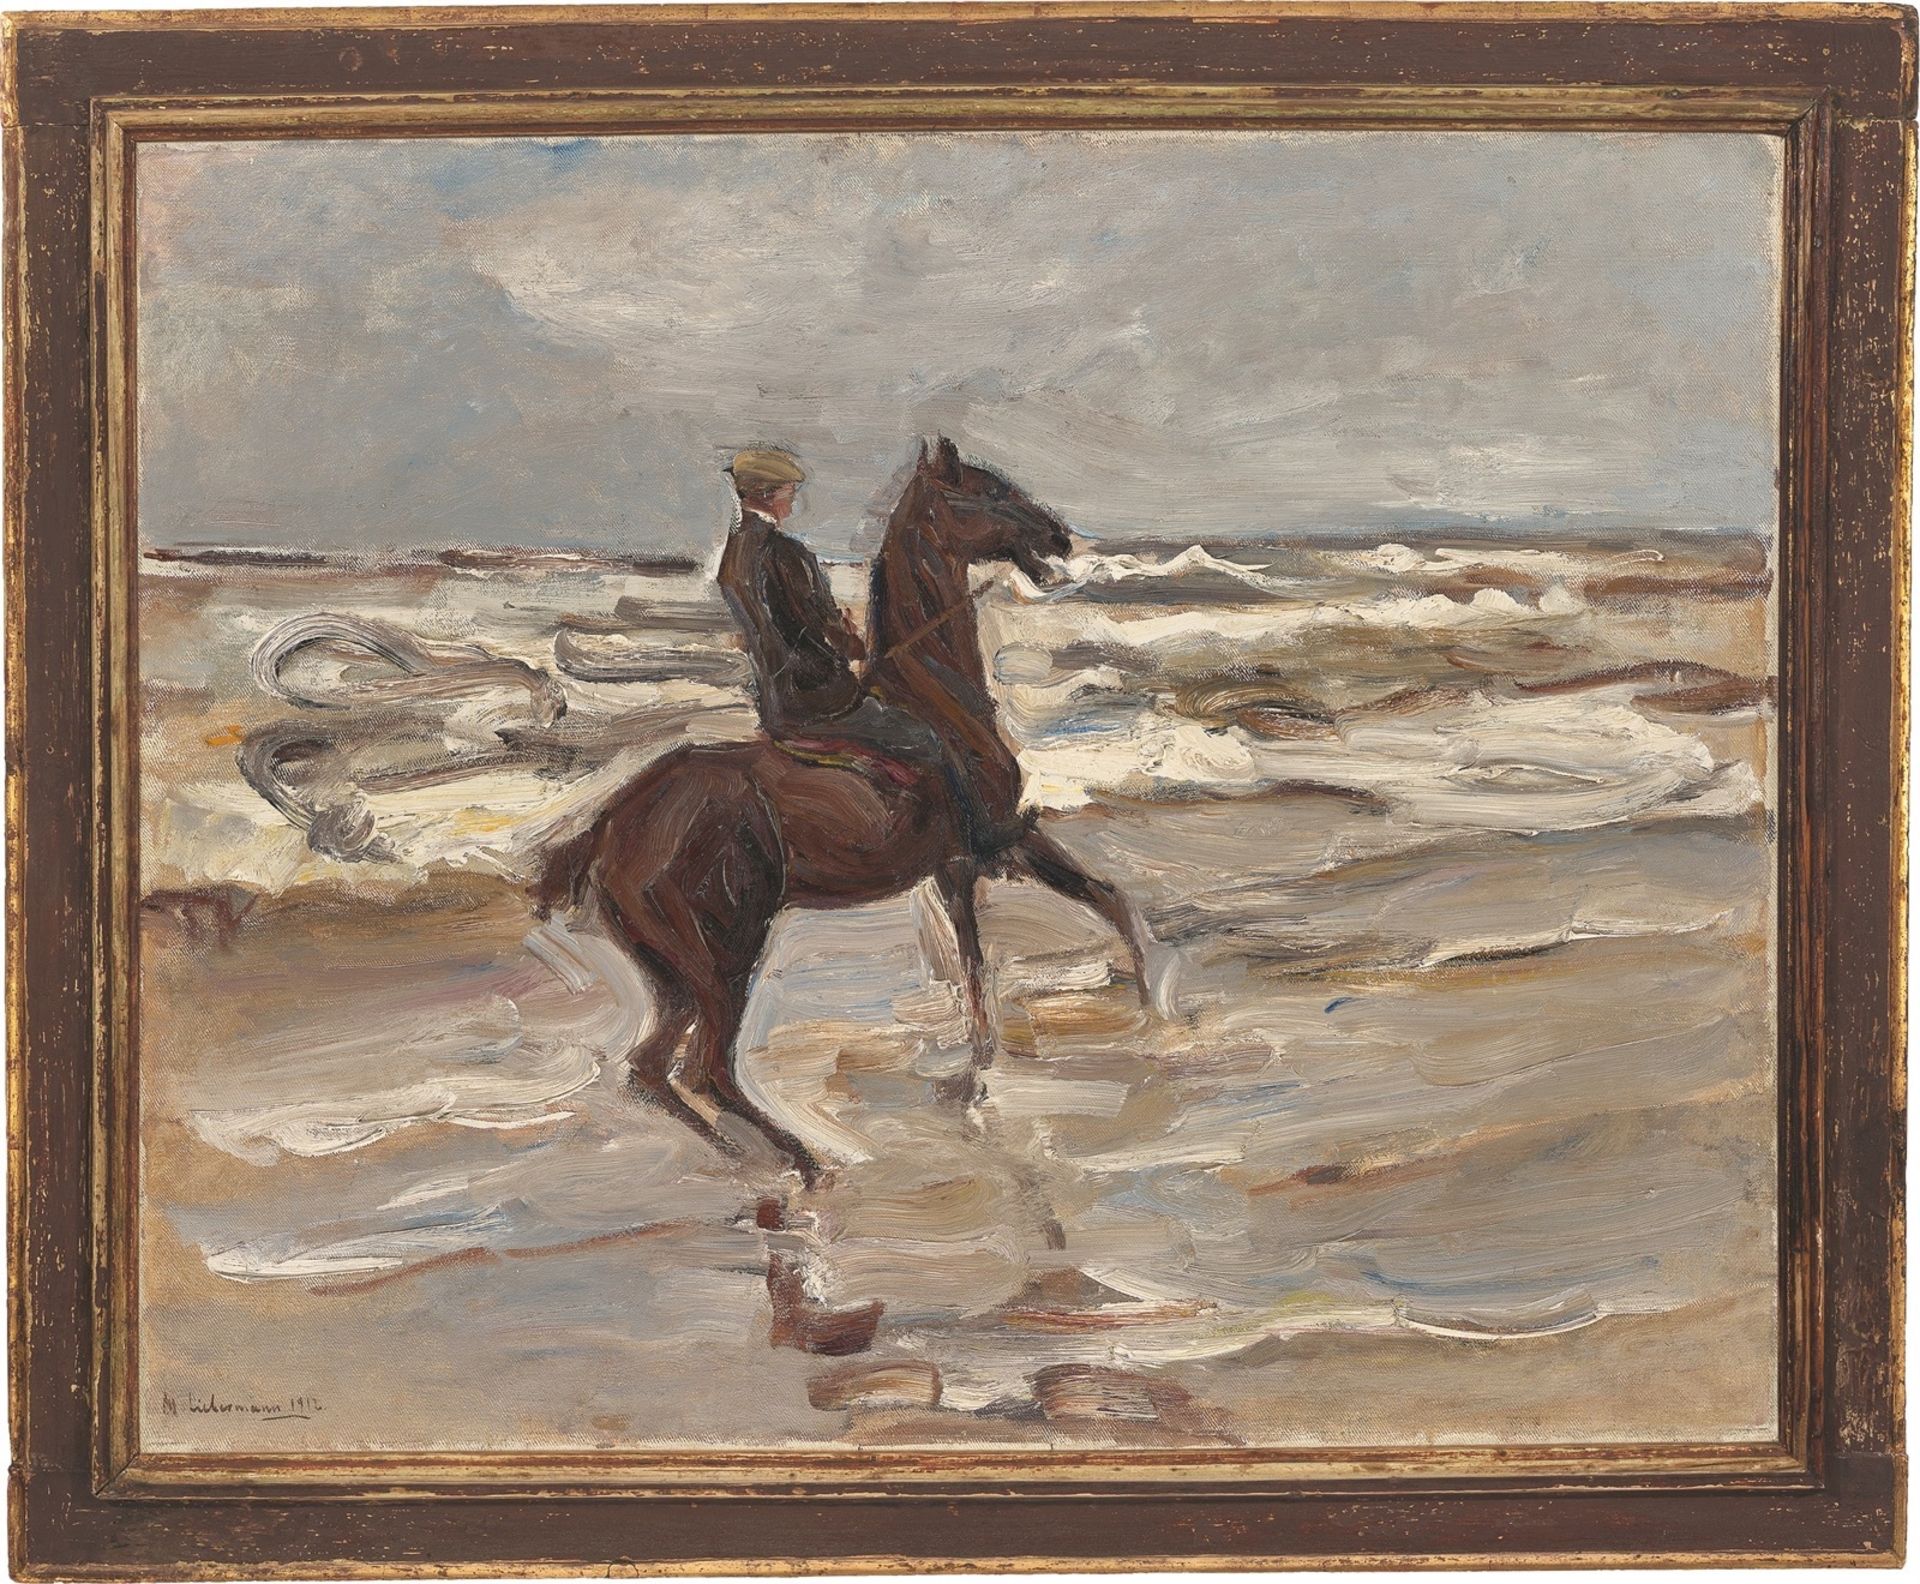 Max Liebermann. ”Reiter am Meer nach rechts”. 1912